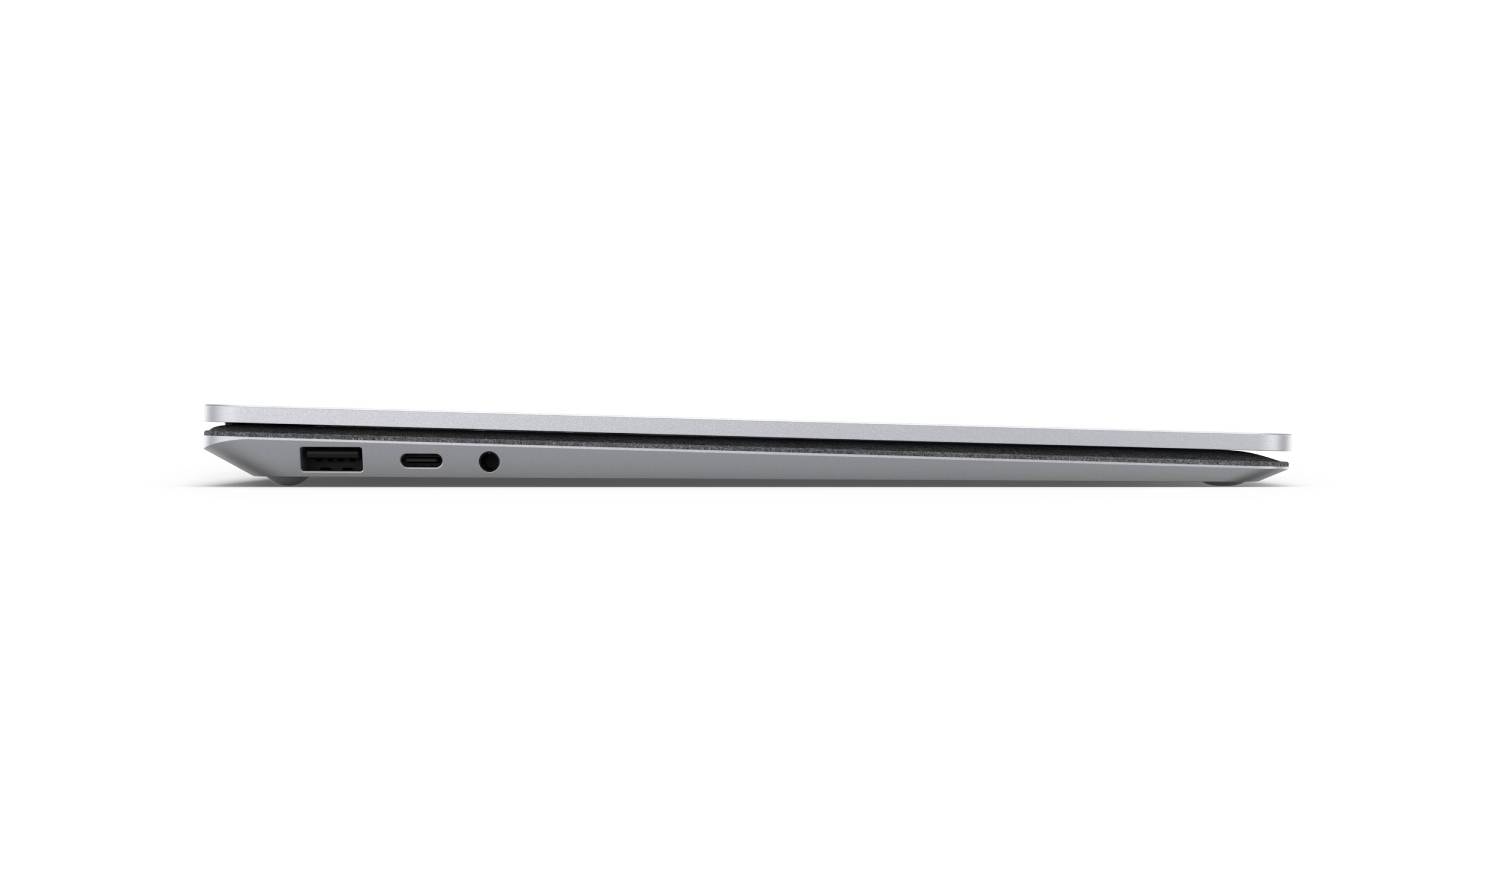 PC portable : énorme remise sur le Microsoft Surface Laptop 4